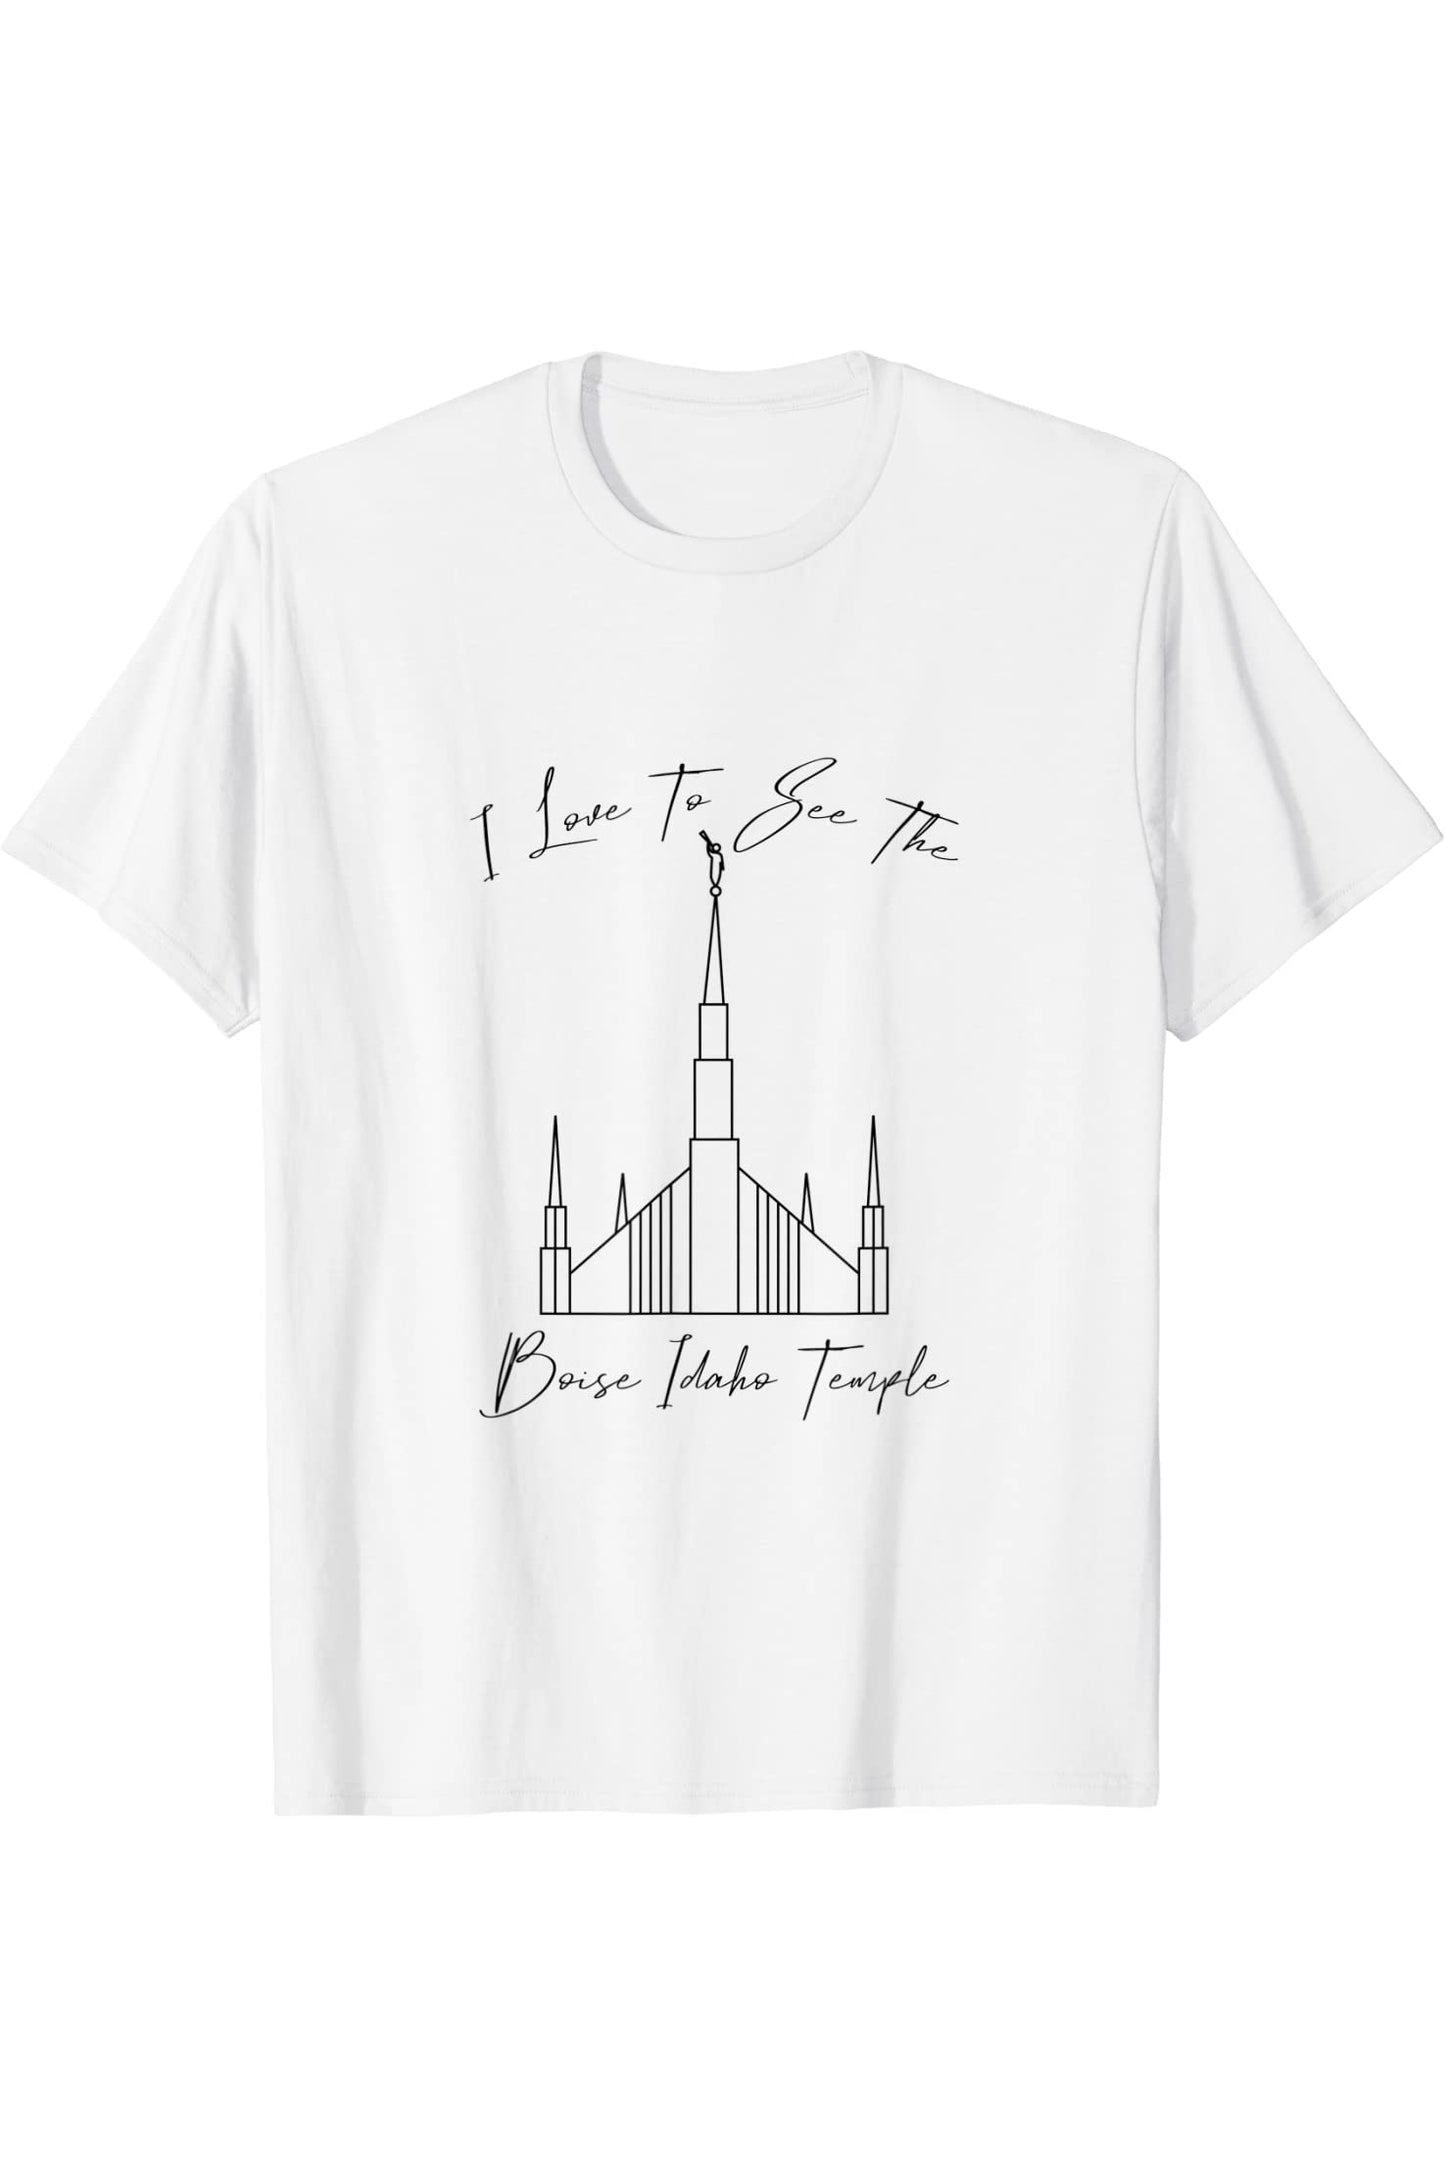 Boise Idaho Temple T-Shirt - Calligraphy Style (English) US